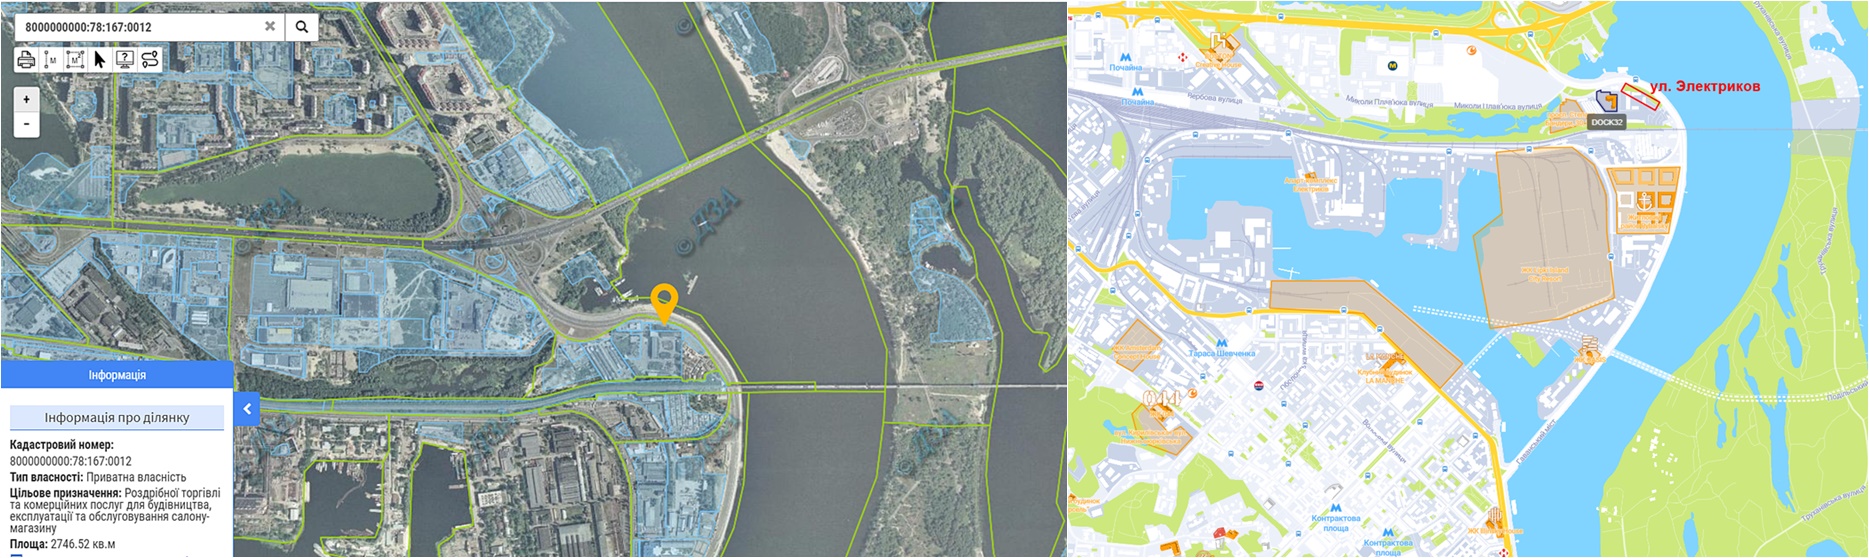 Строительство многофункционального комплекса по ул. Электриков данные кадастра и на карте